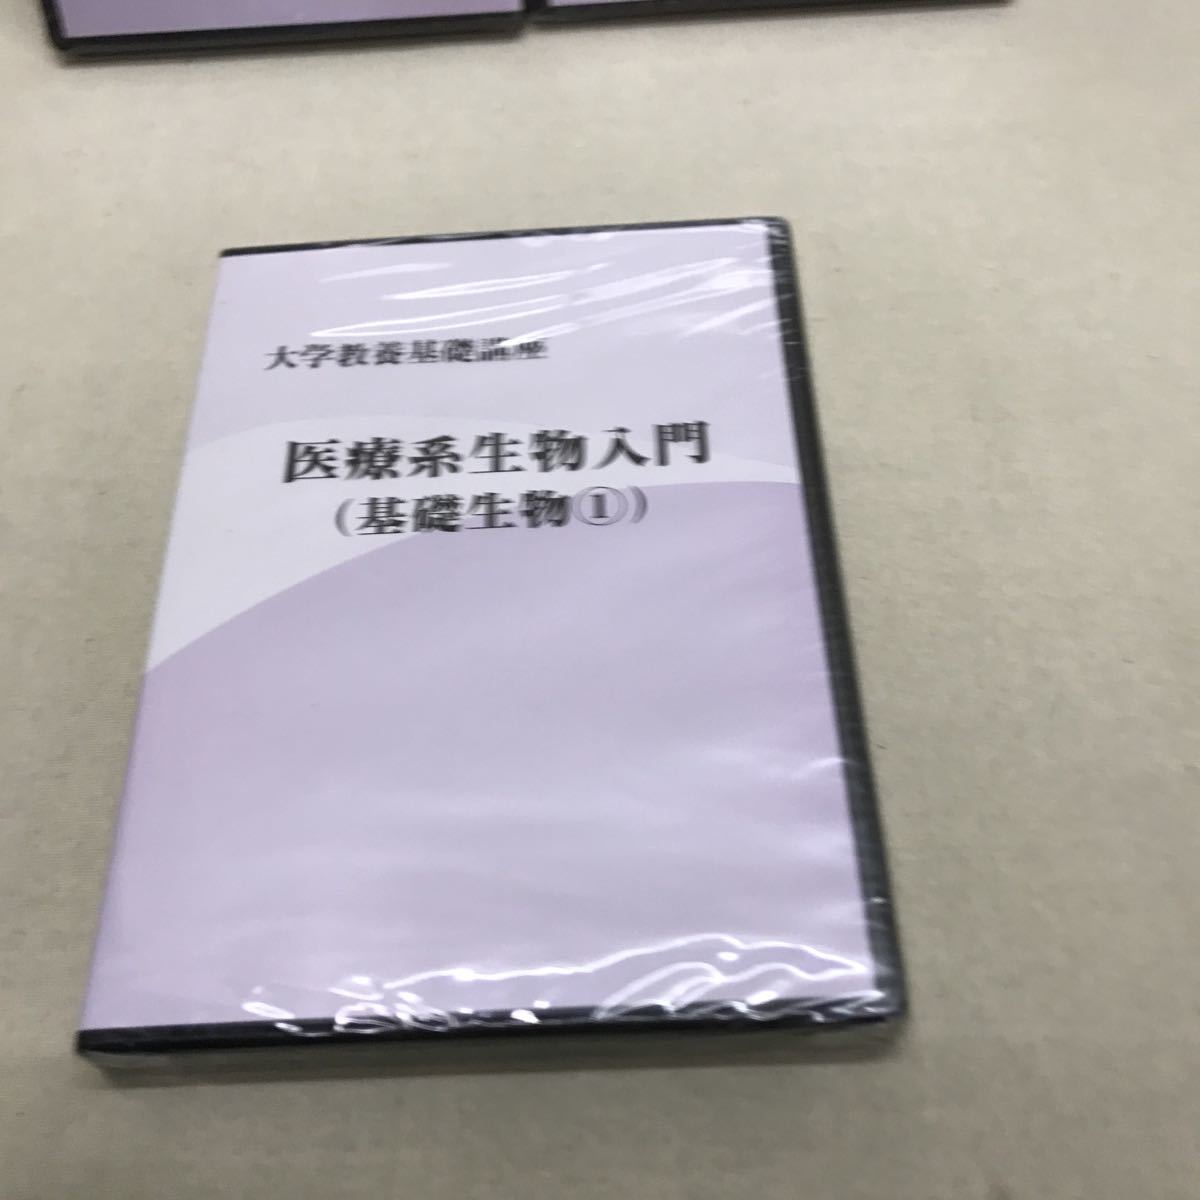 [3S02-177] бесплатная доставка nagase университет образование основа курс DVD 3 шт комплект 